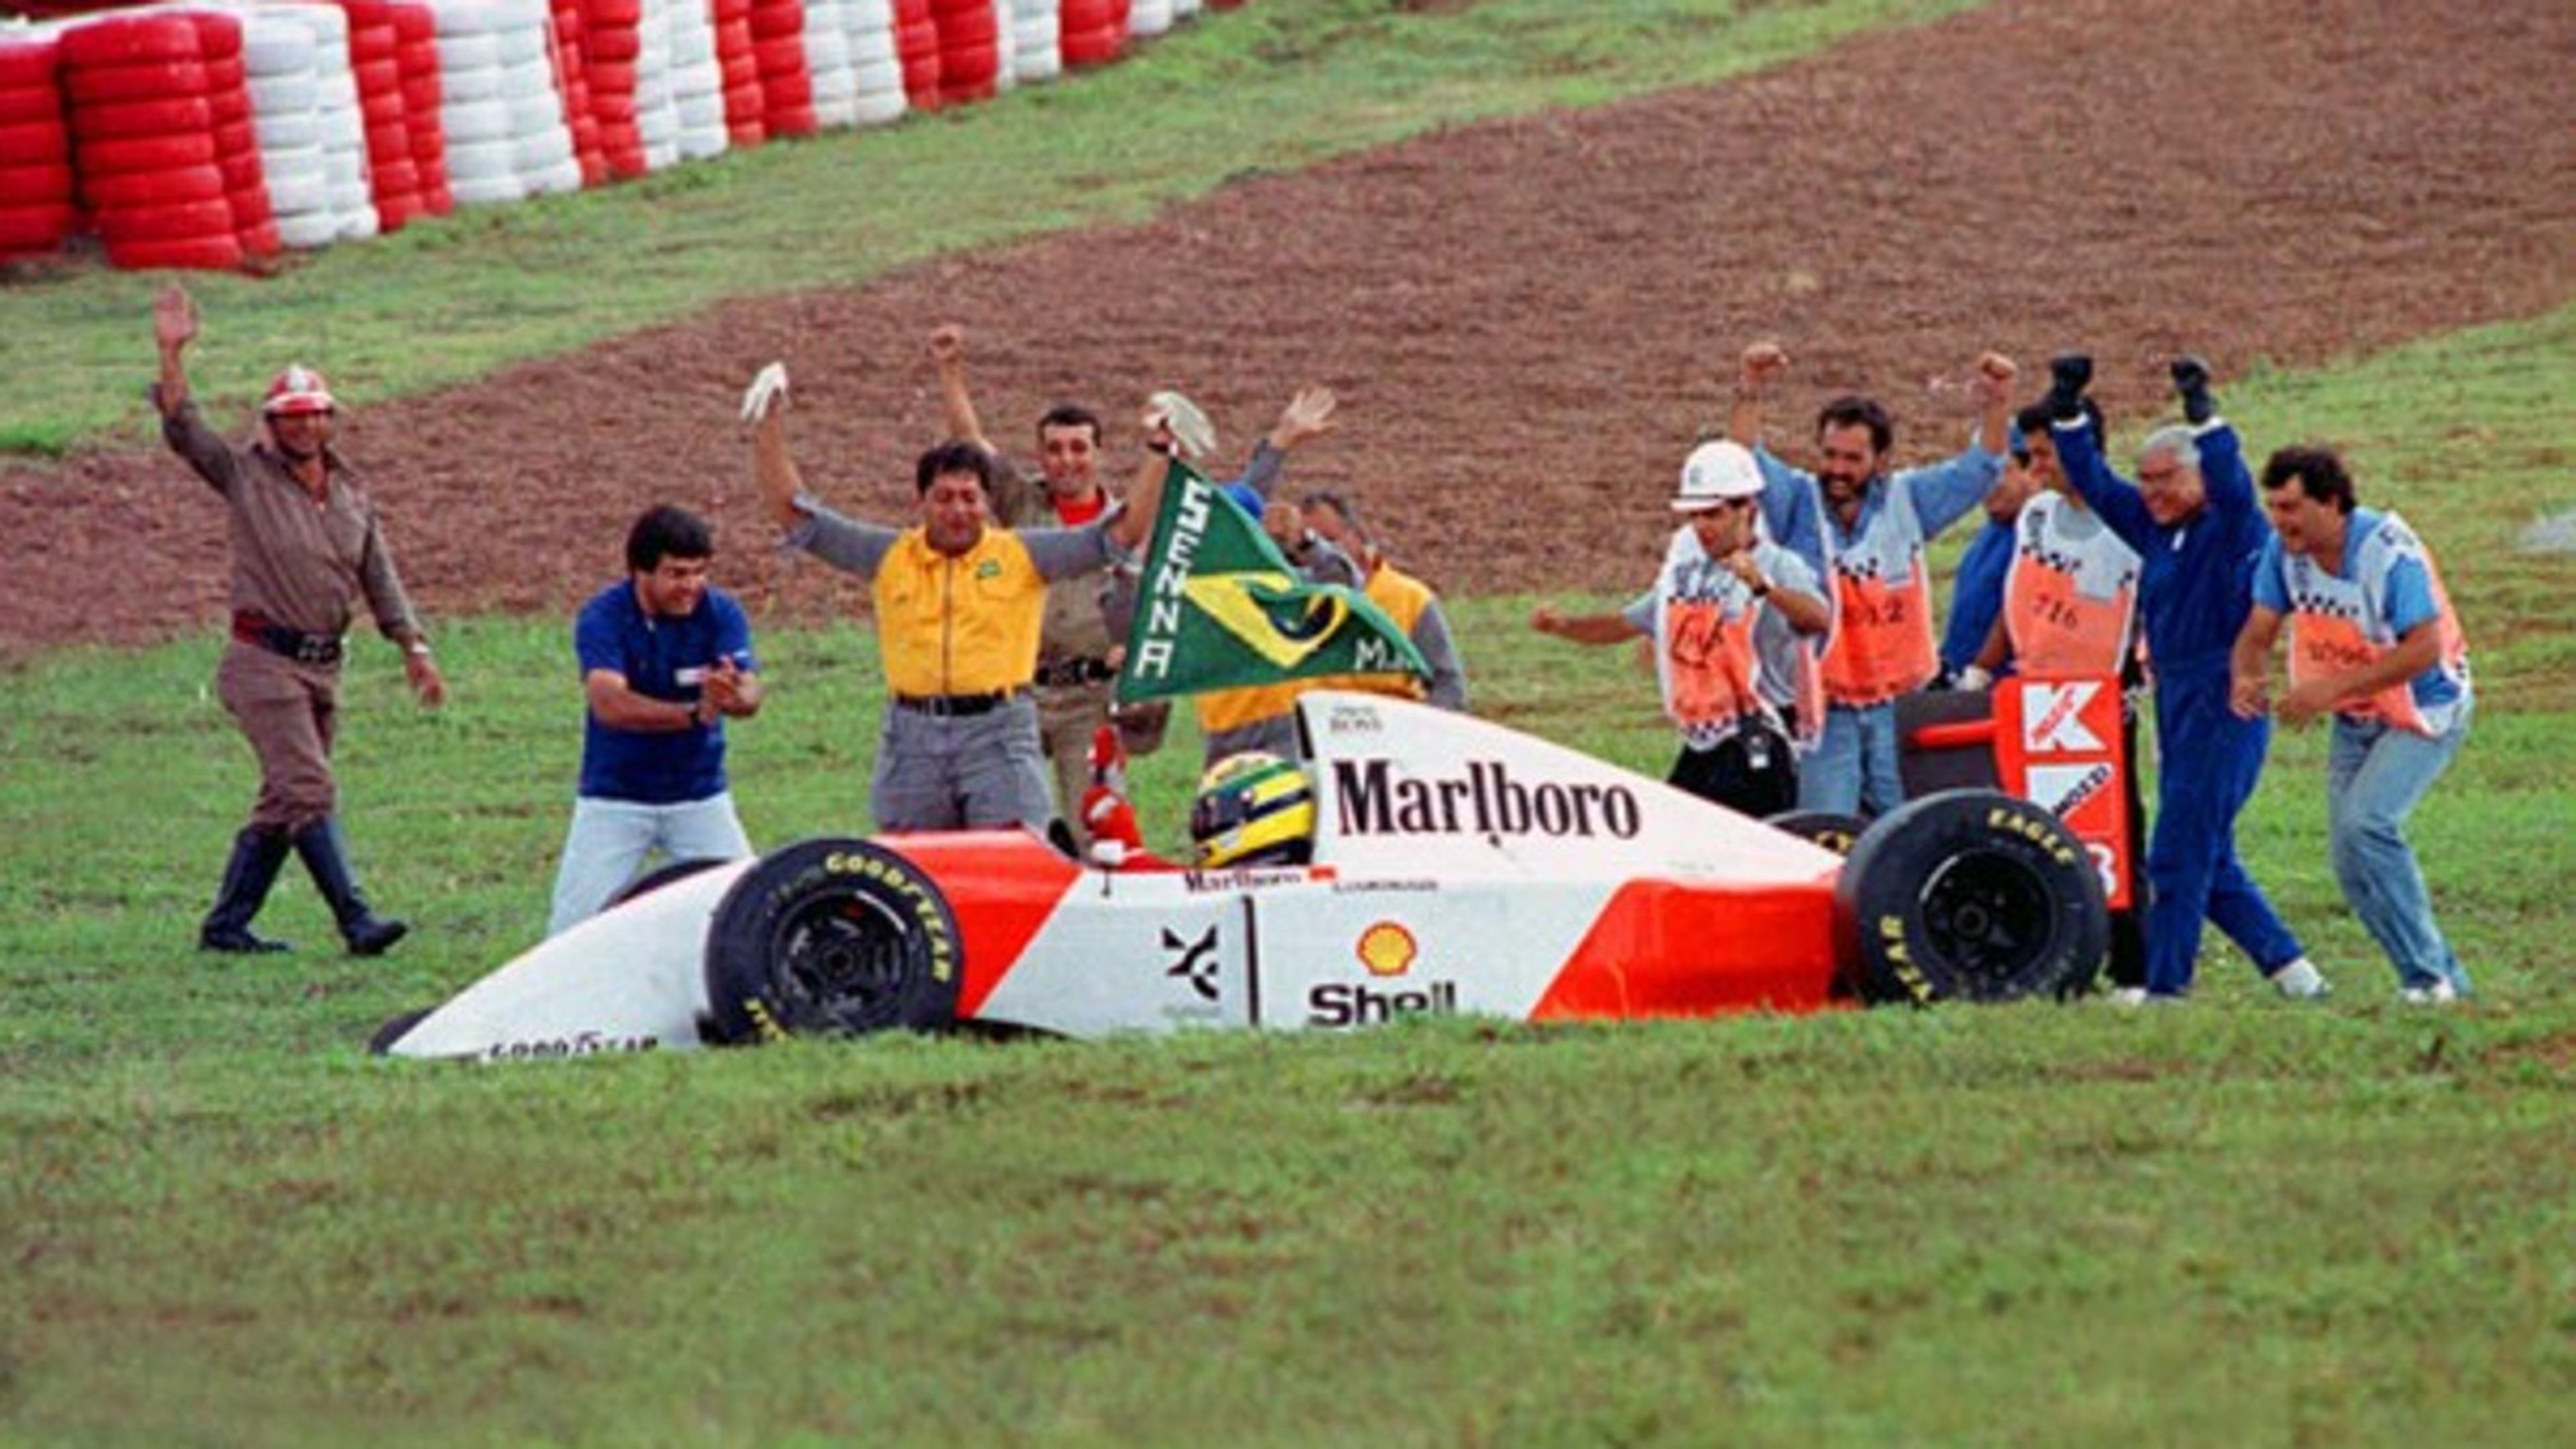 GP de F1 Brasil: La torcida carioca siente devoción por Ayrton Senna, su héroe nacional